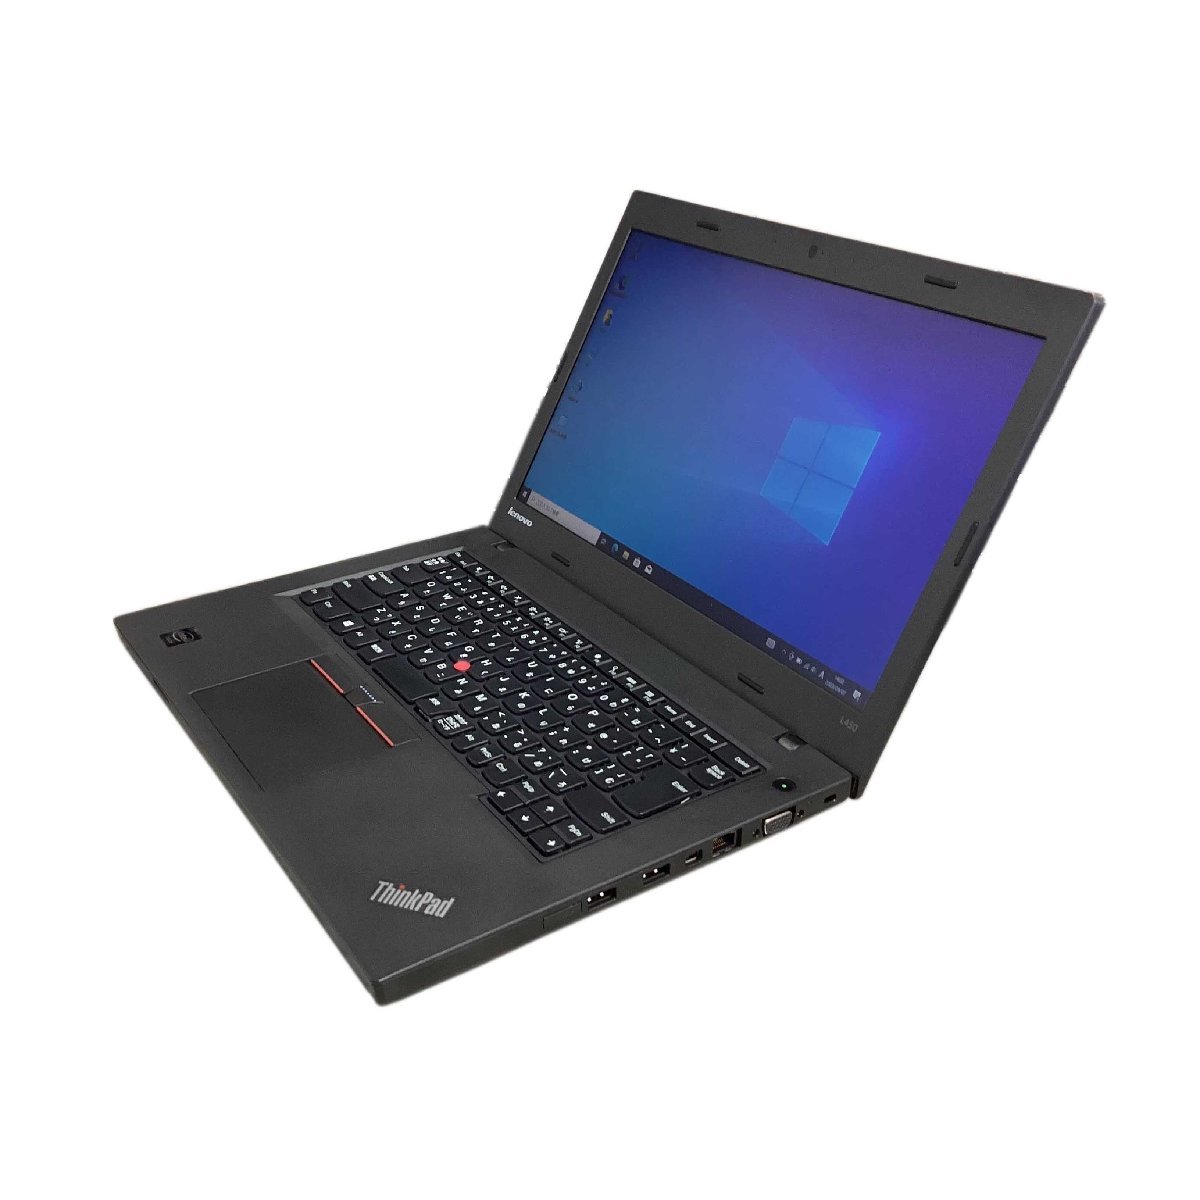 訳アリ Lenovo ThinkPad L450 Celeron 3205U 1.5GHz メモリ4GB HDD 500GB Bluetooth搭載 Windows10Pro ノートパソコン I102_画像3